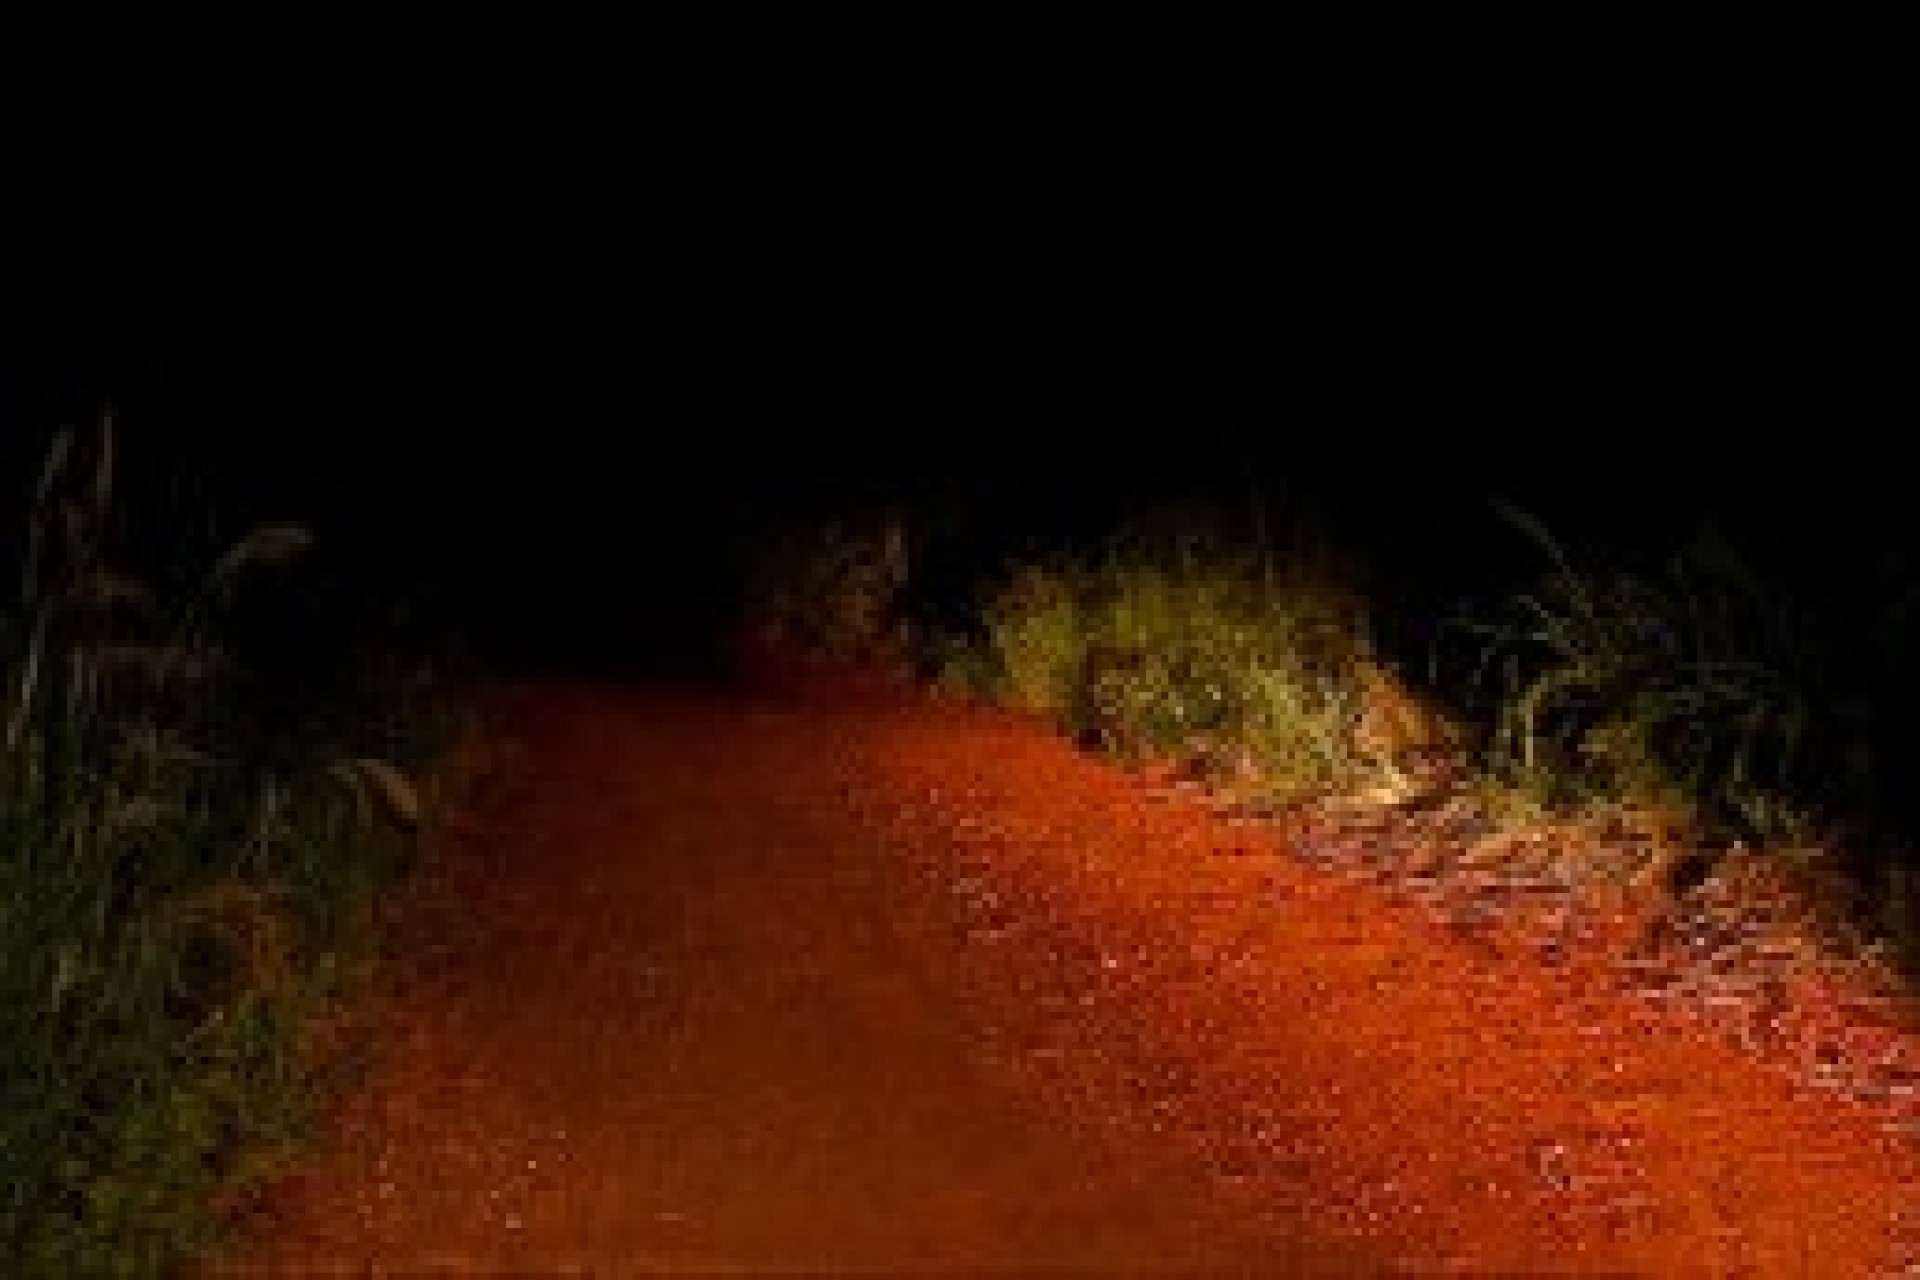 Serranópolis: Homem é encontrado morto em estrada rural